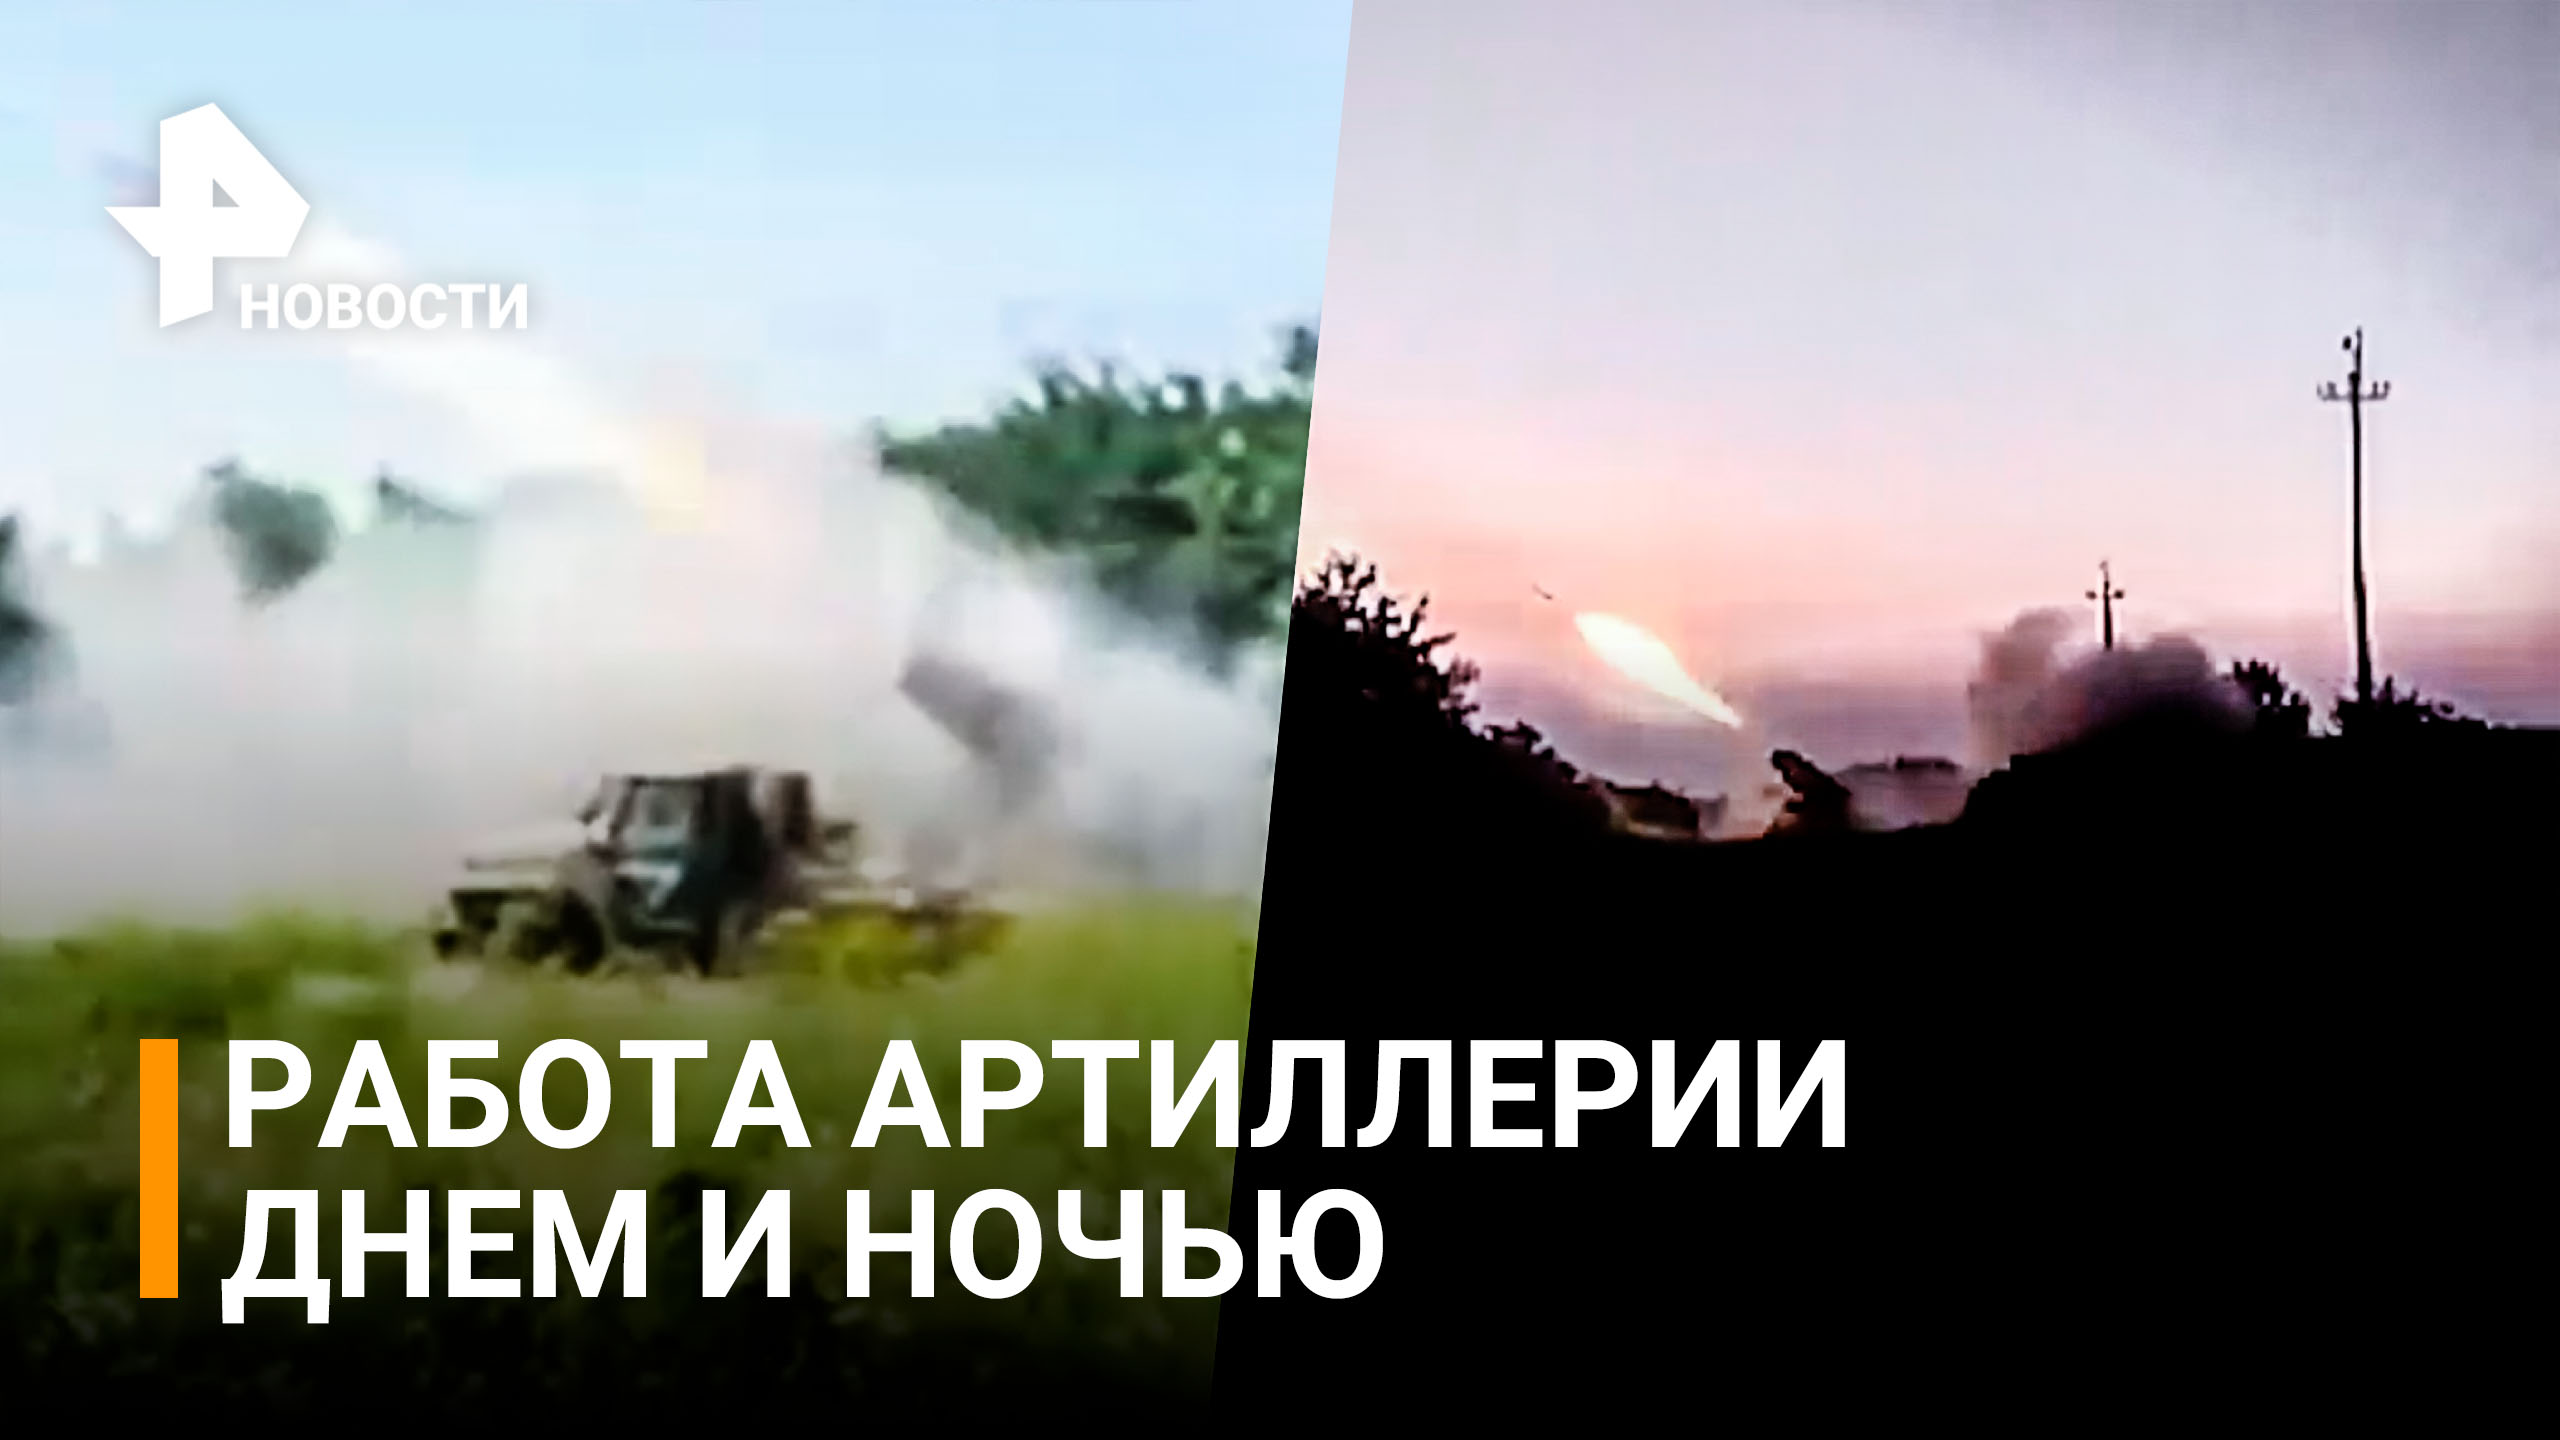 Артиллерийская дуэль: силы ДНР обстреливают позиции националистов под Донецком / РЕН Новости